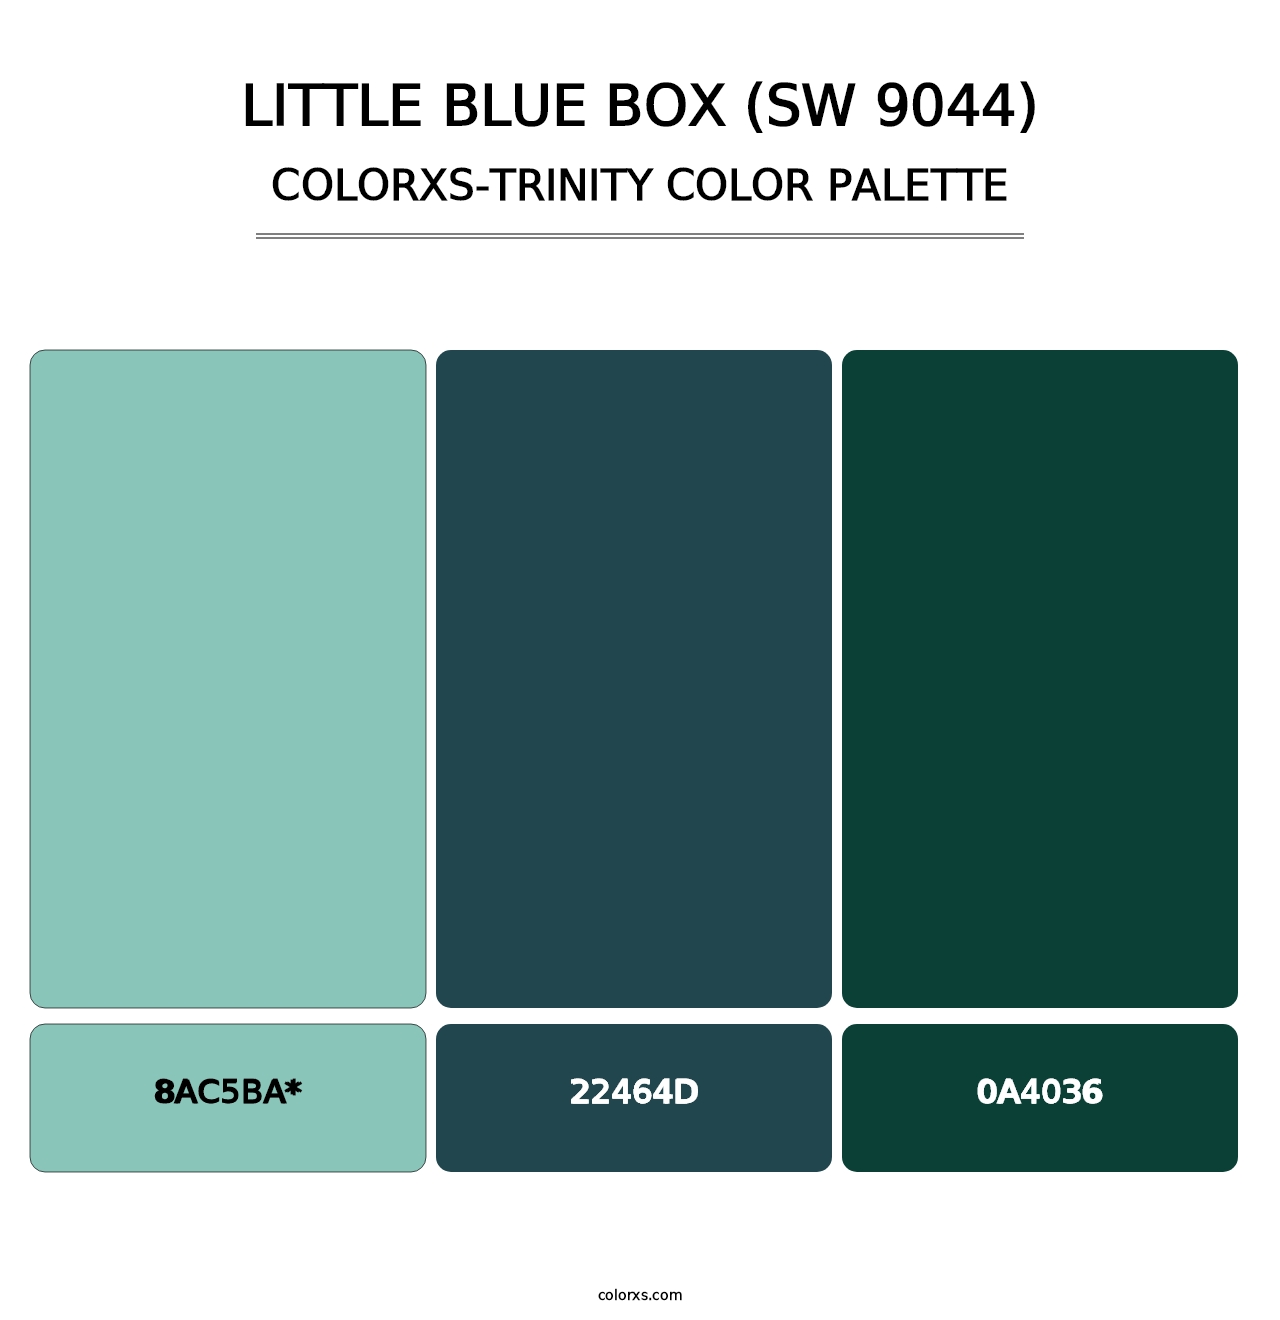 Little Blue Box (SW 9044) - Colorxs Trinity Palette